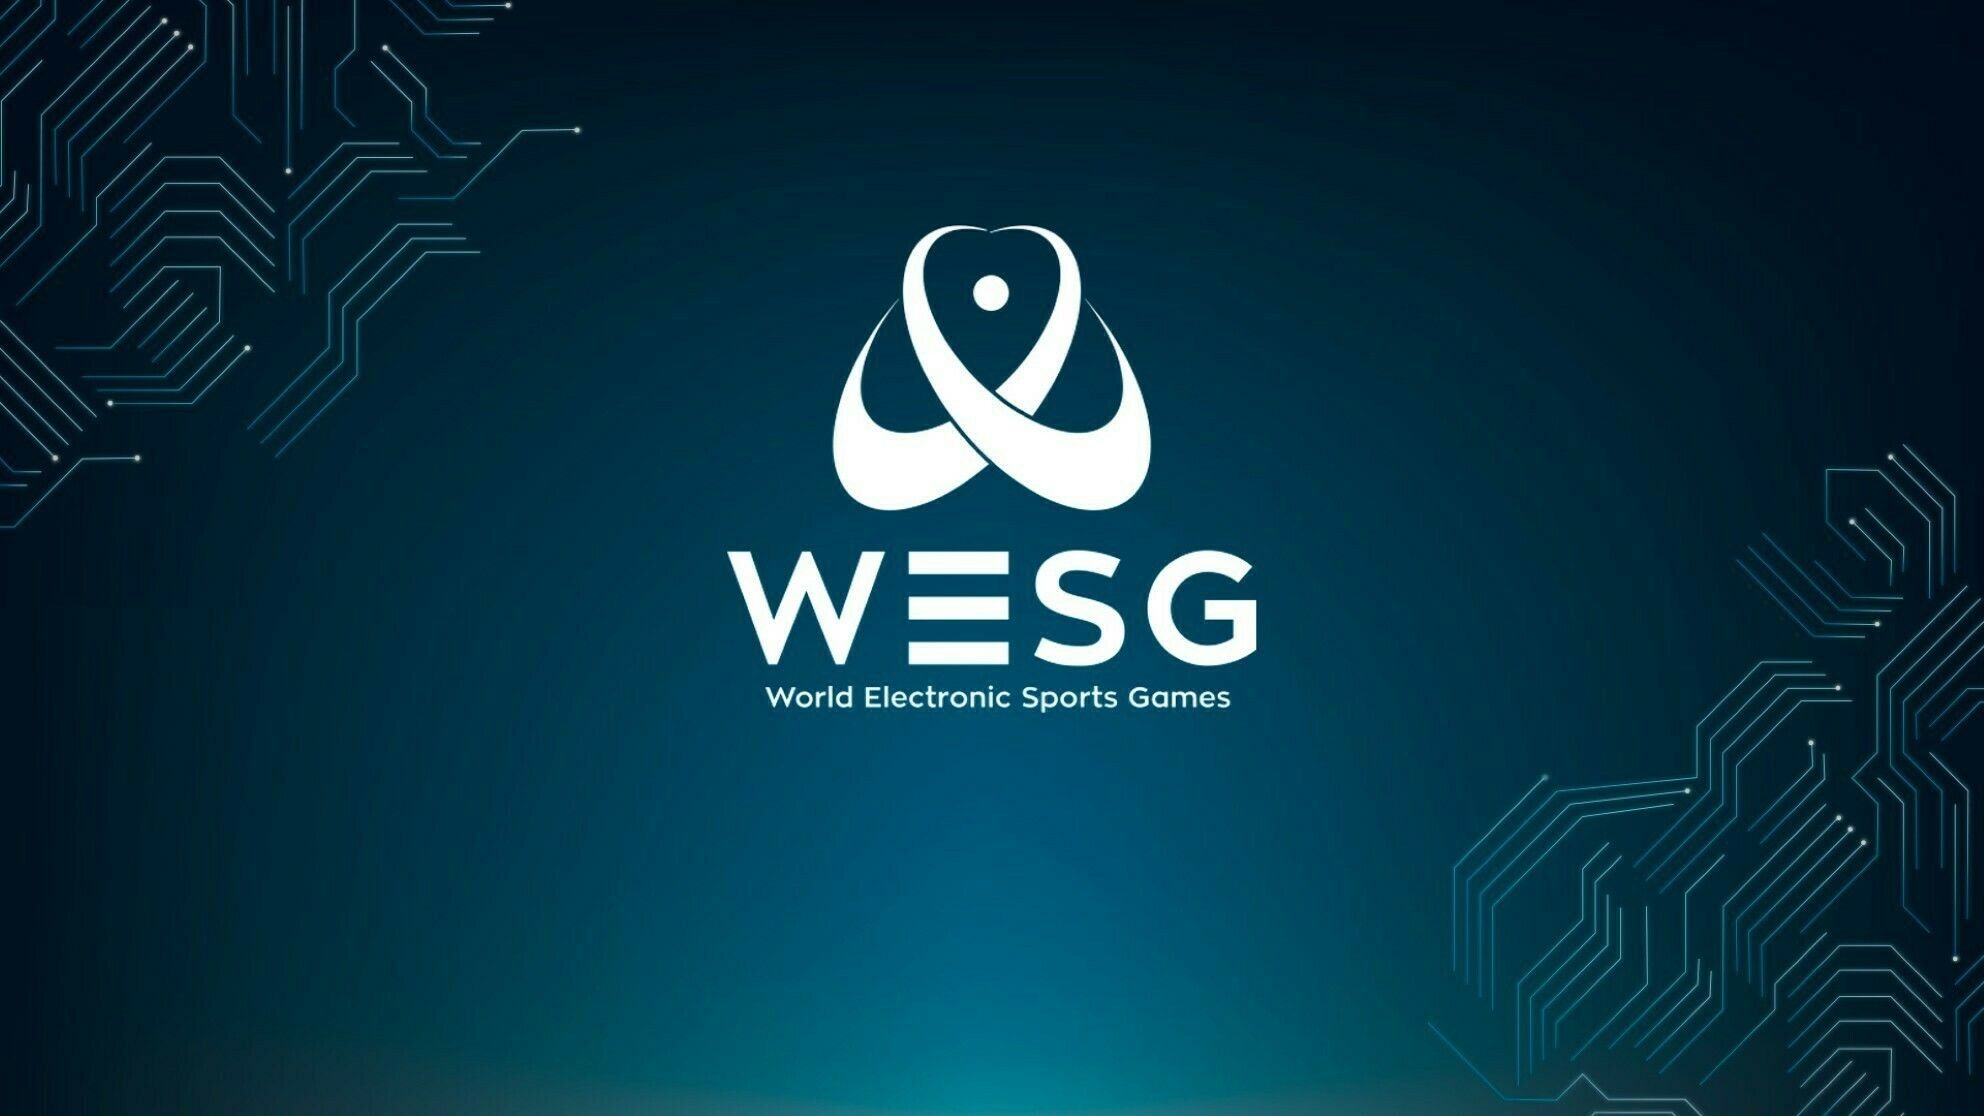 Участники WESG 2019 до сих пор не получили свои призовые